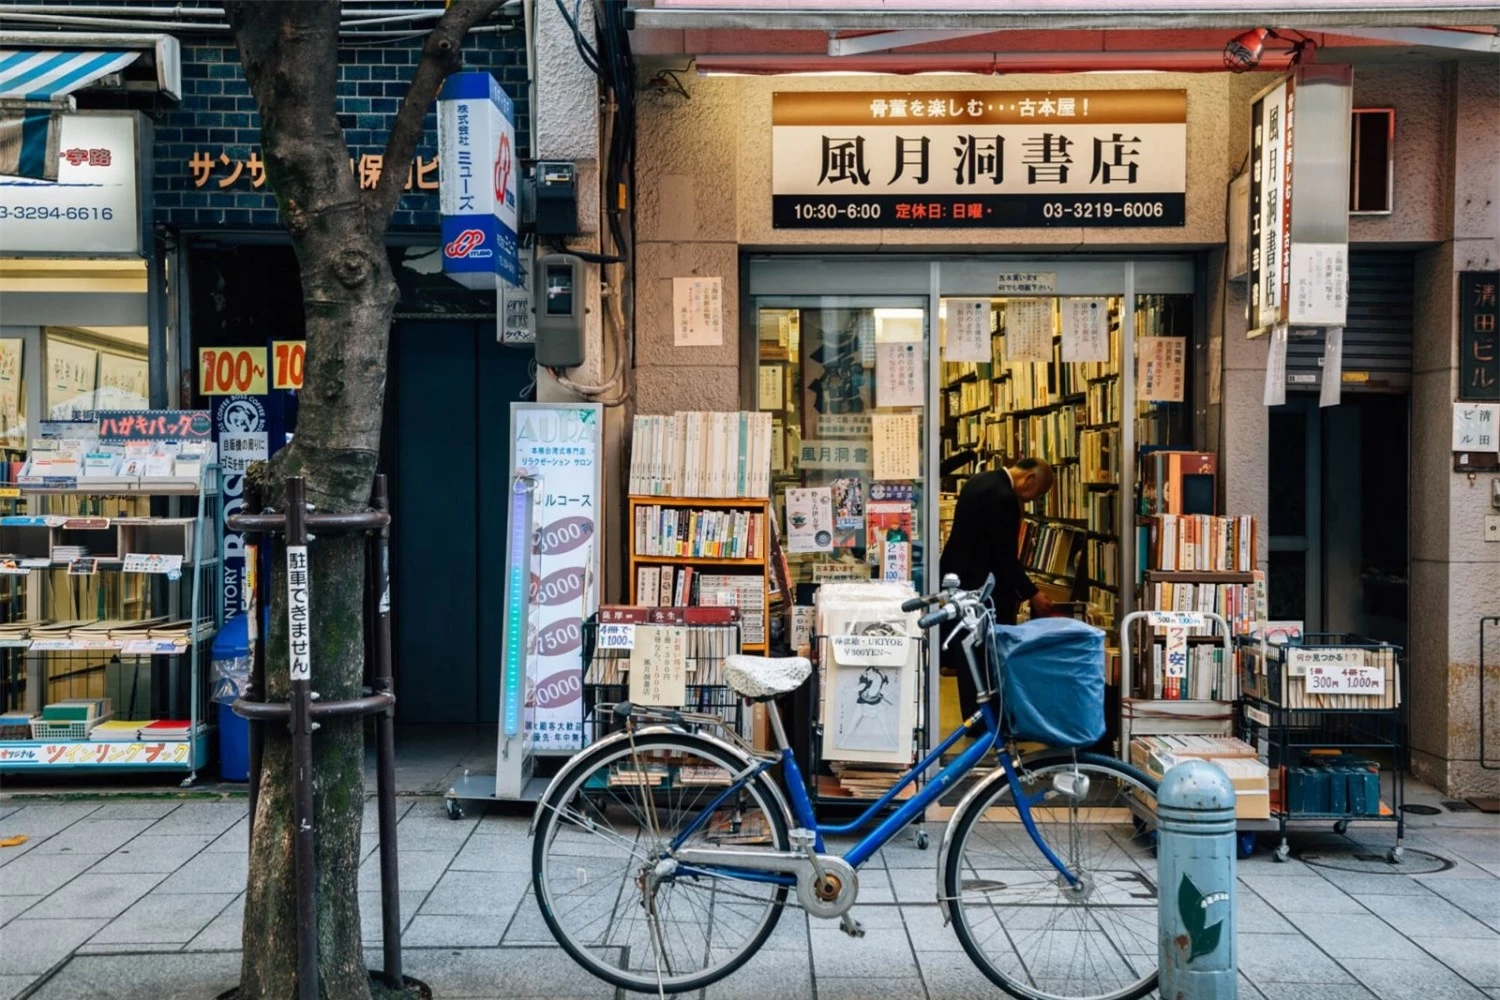 Ghé thăm chợ sách lớn nhất châu Á tại Nhật Bản